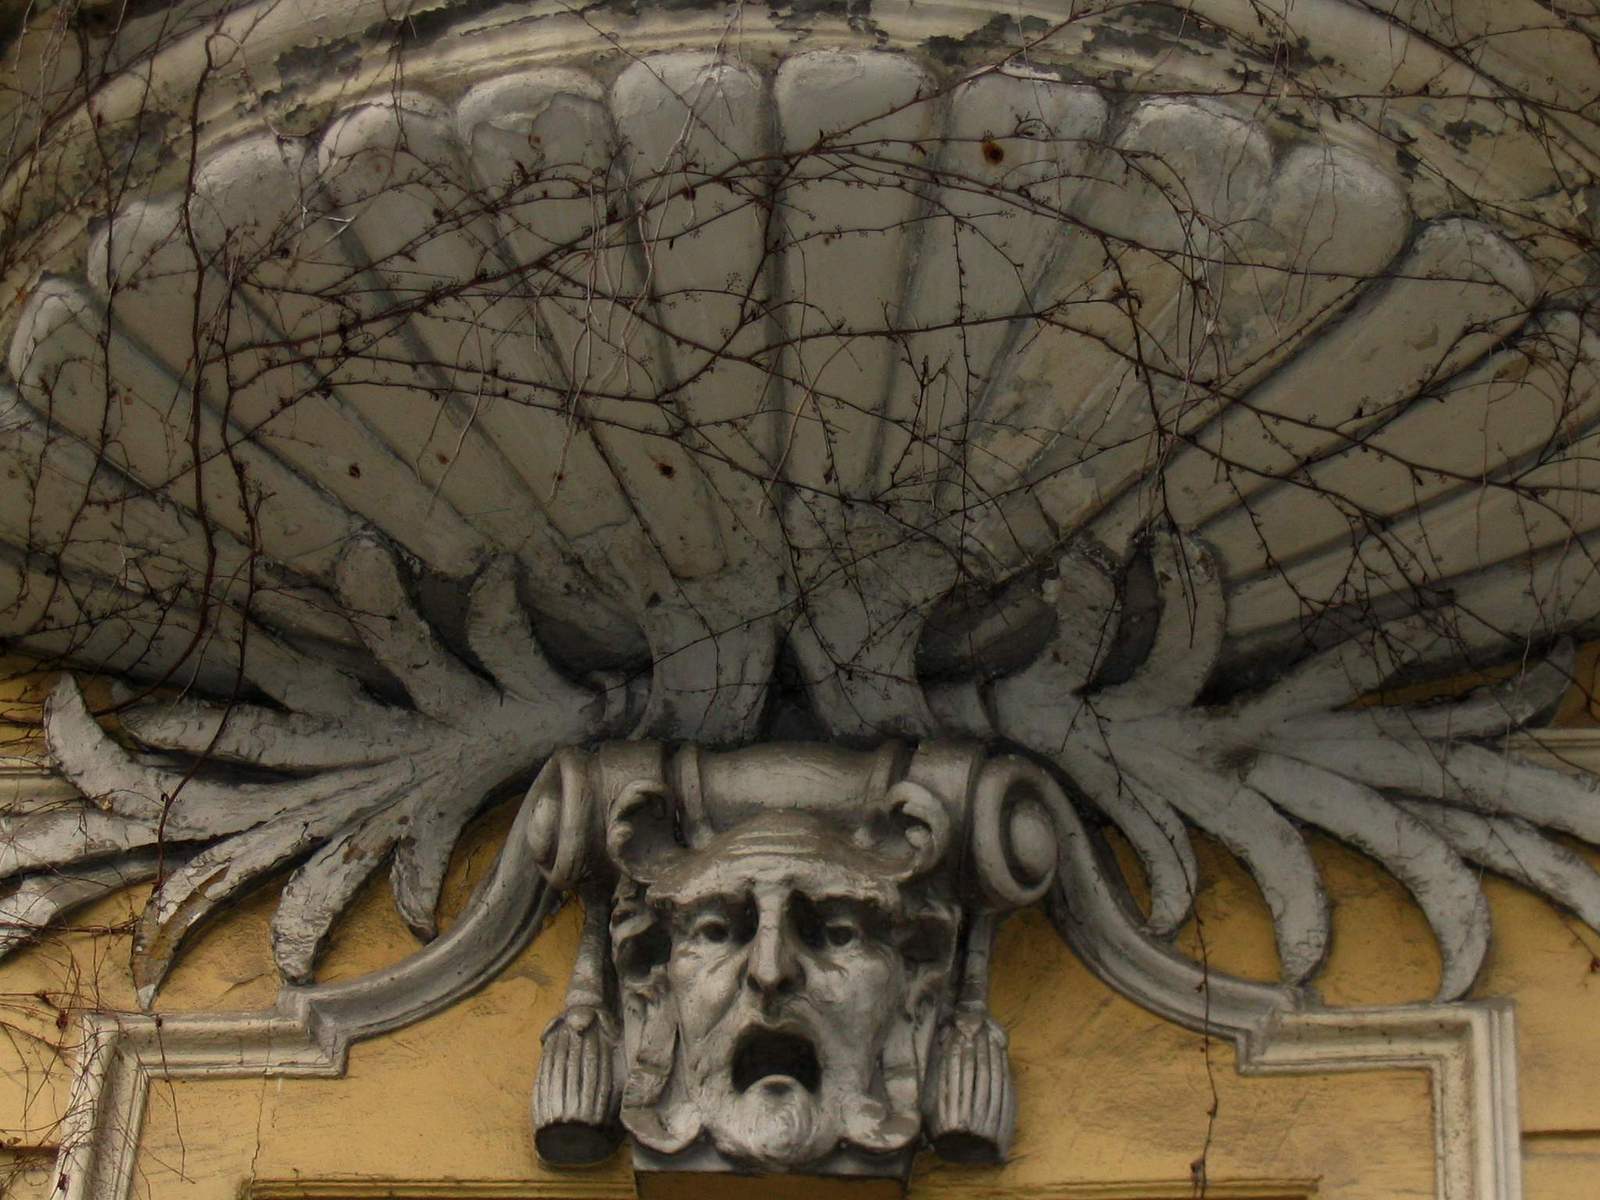 a gargoyle gargous adorns the building facade